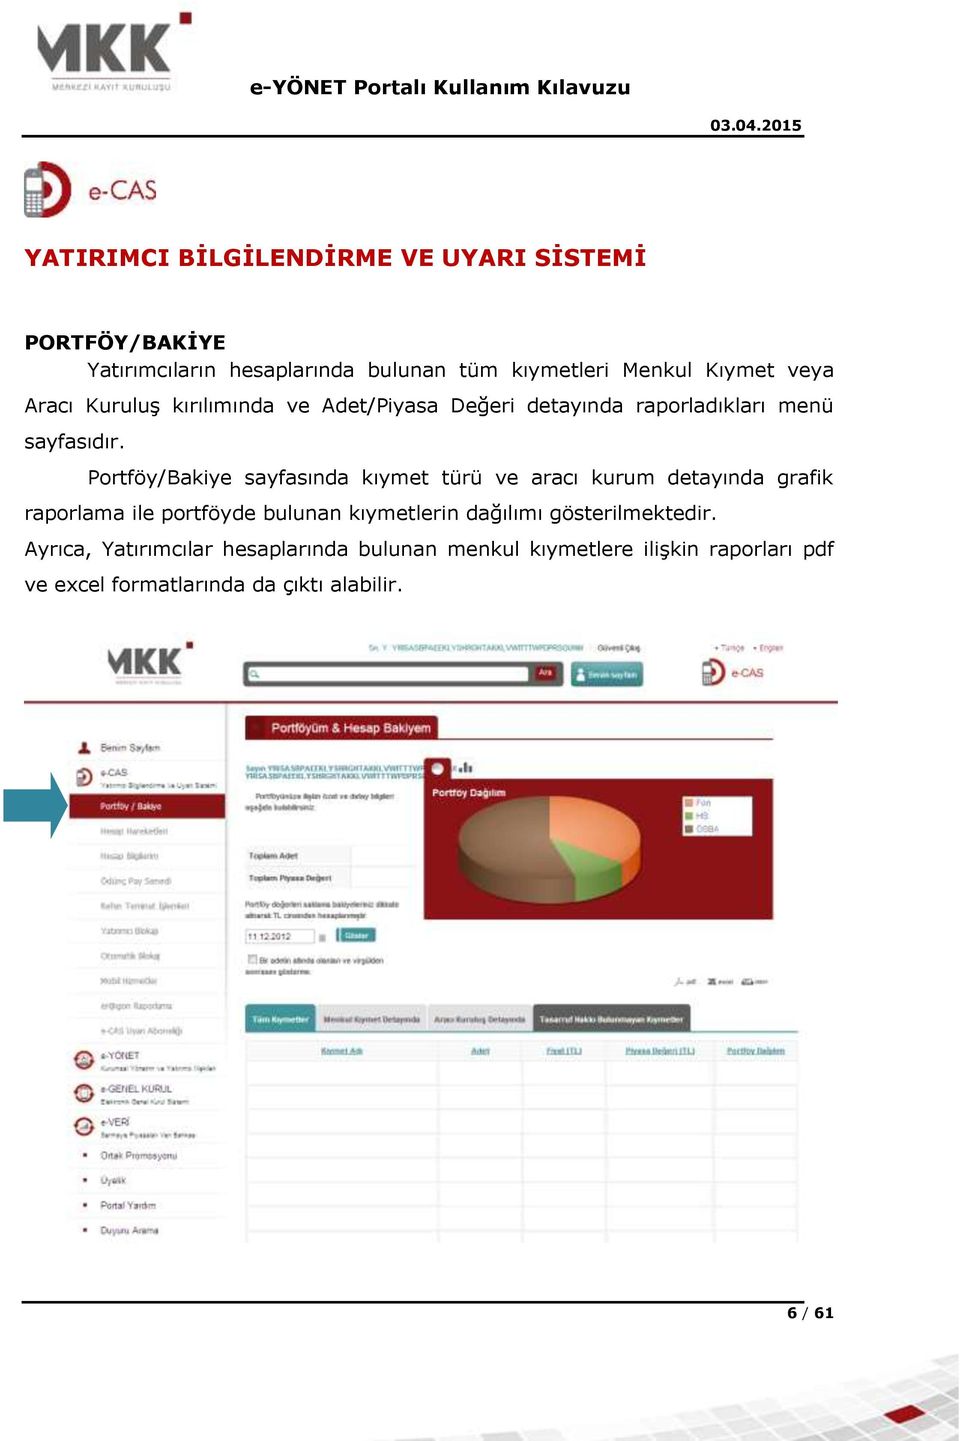 Portföy/Bakiye sayfasında kıymet türü ve aracı kurum detayında grafik raporlama ile portföyde bulunan kıymetlerin